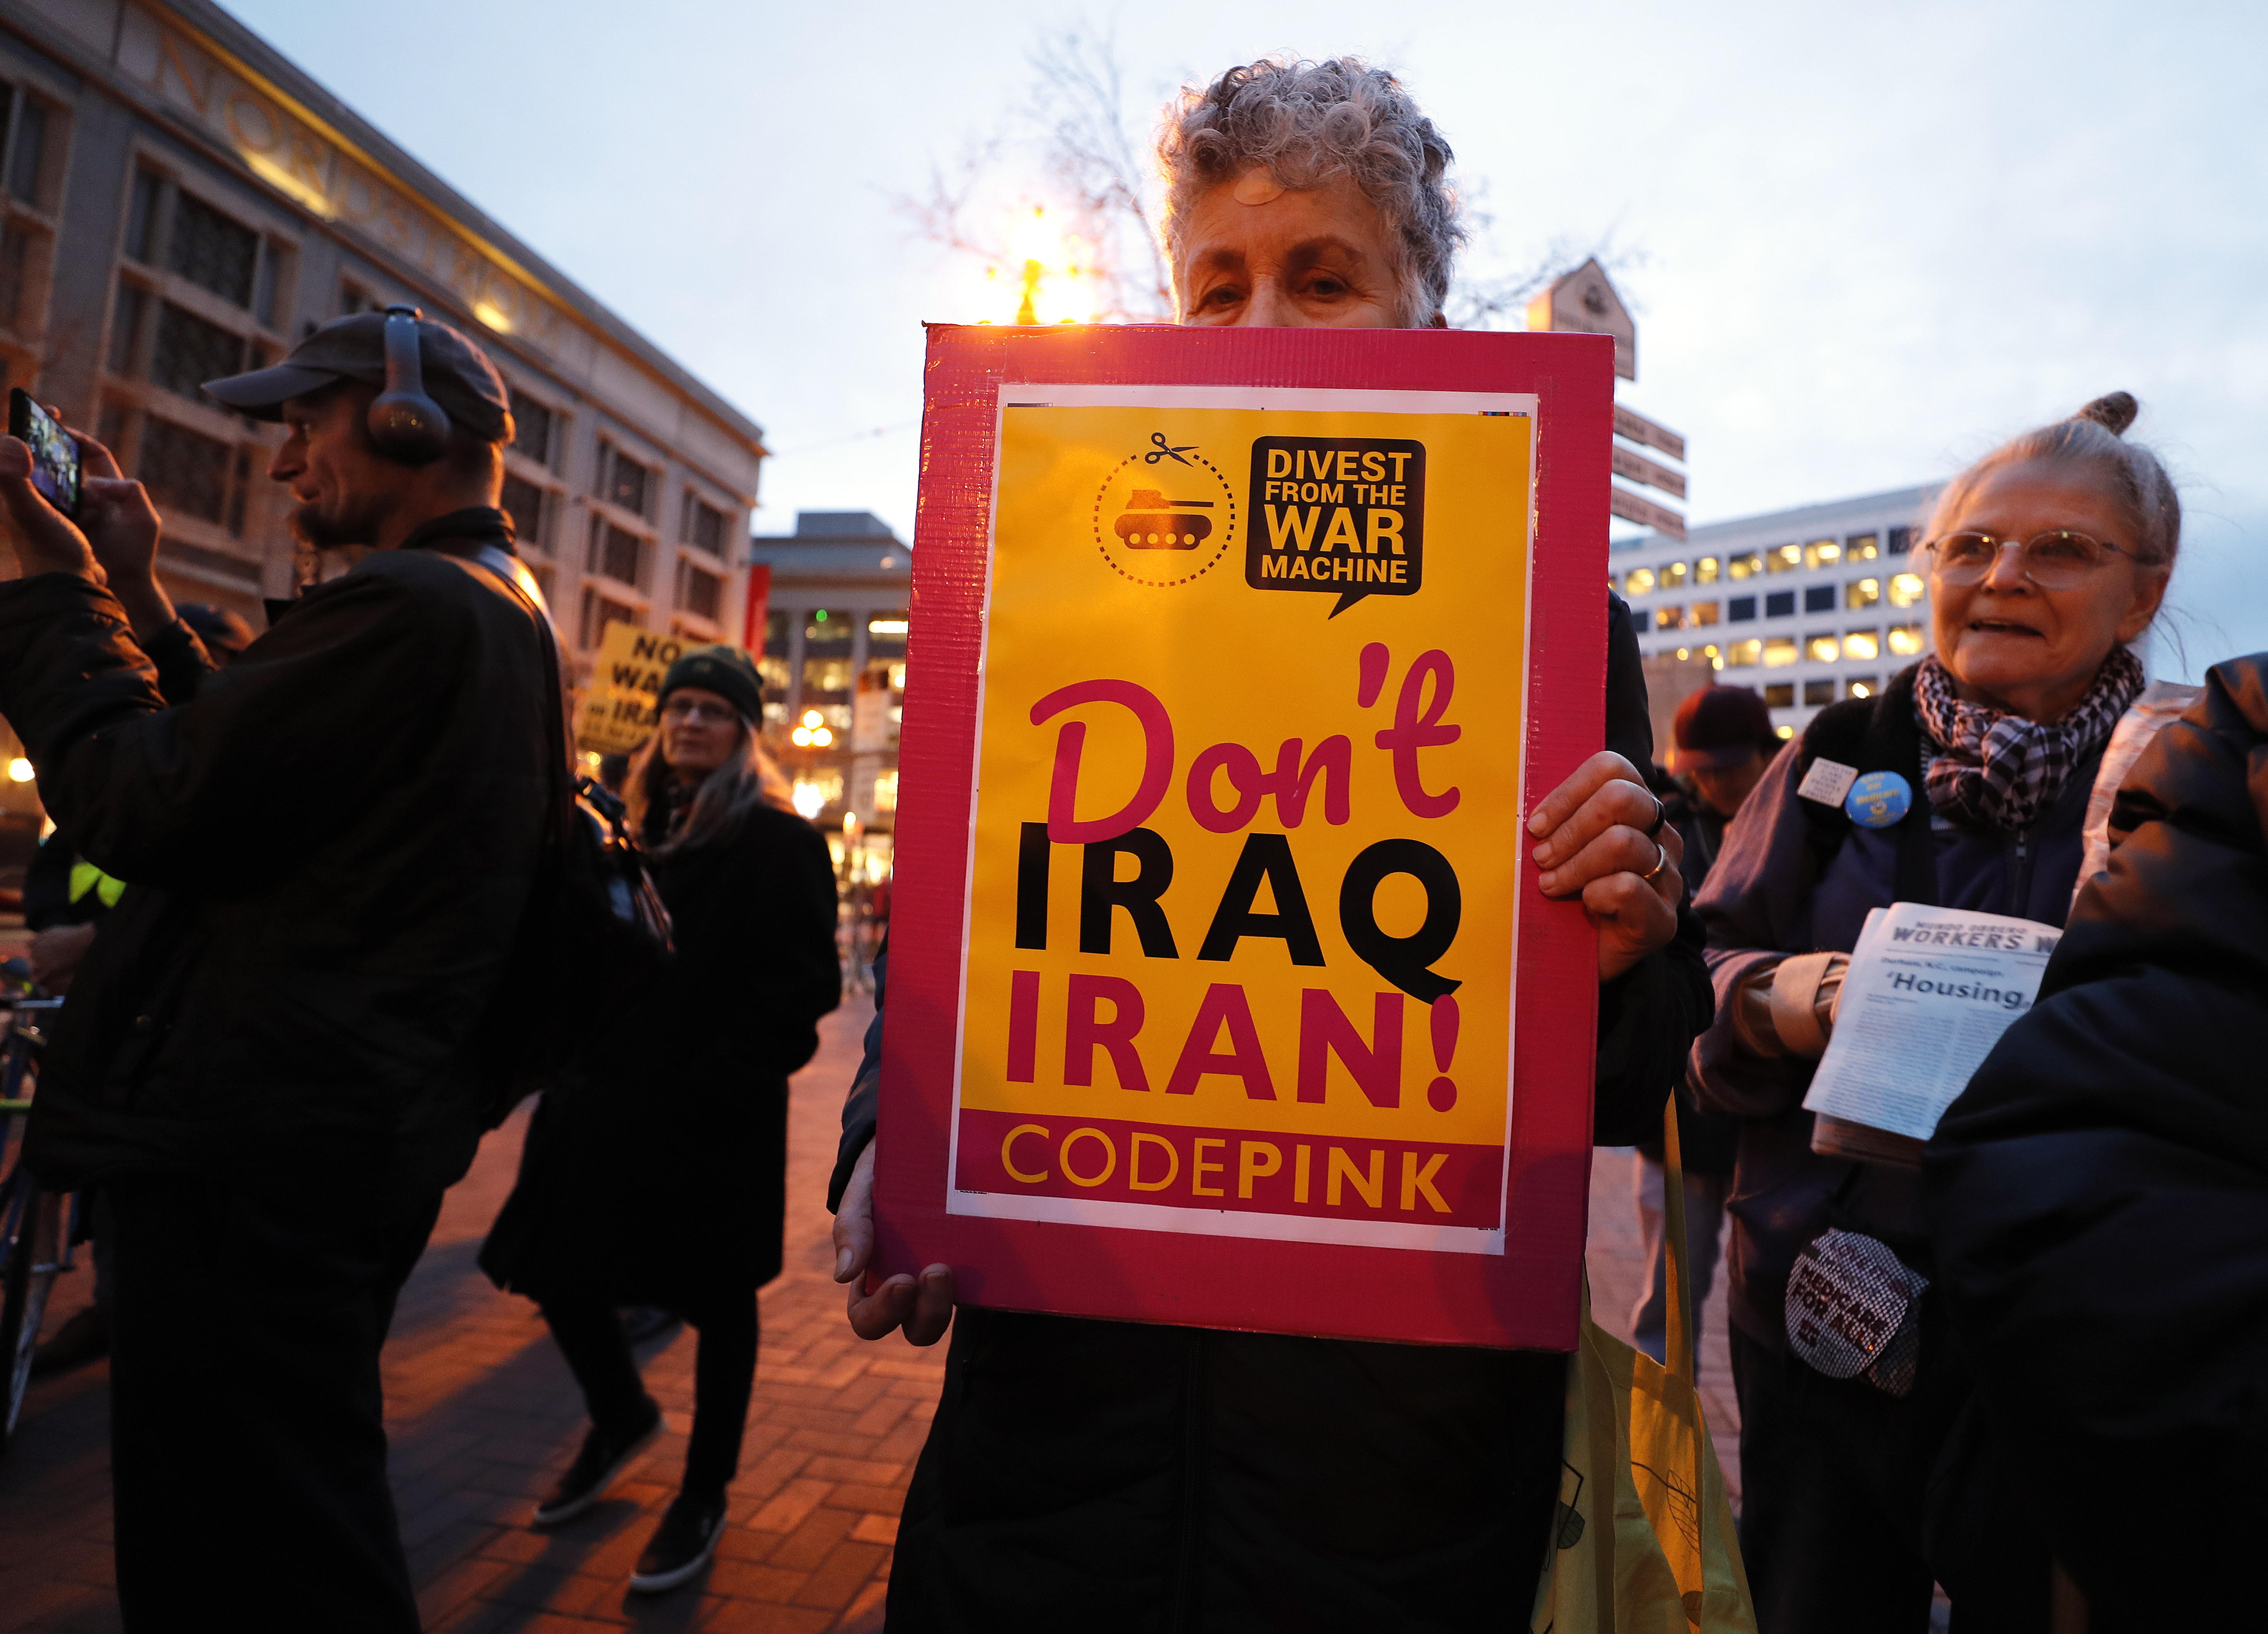 On és l'Iran? Als EUA no ho tenen clar